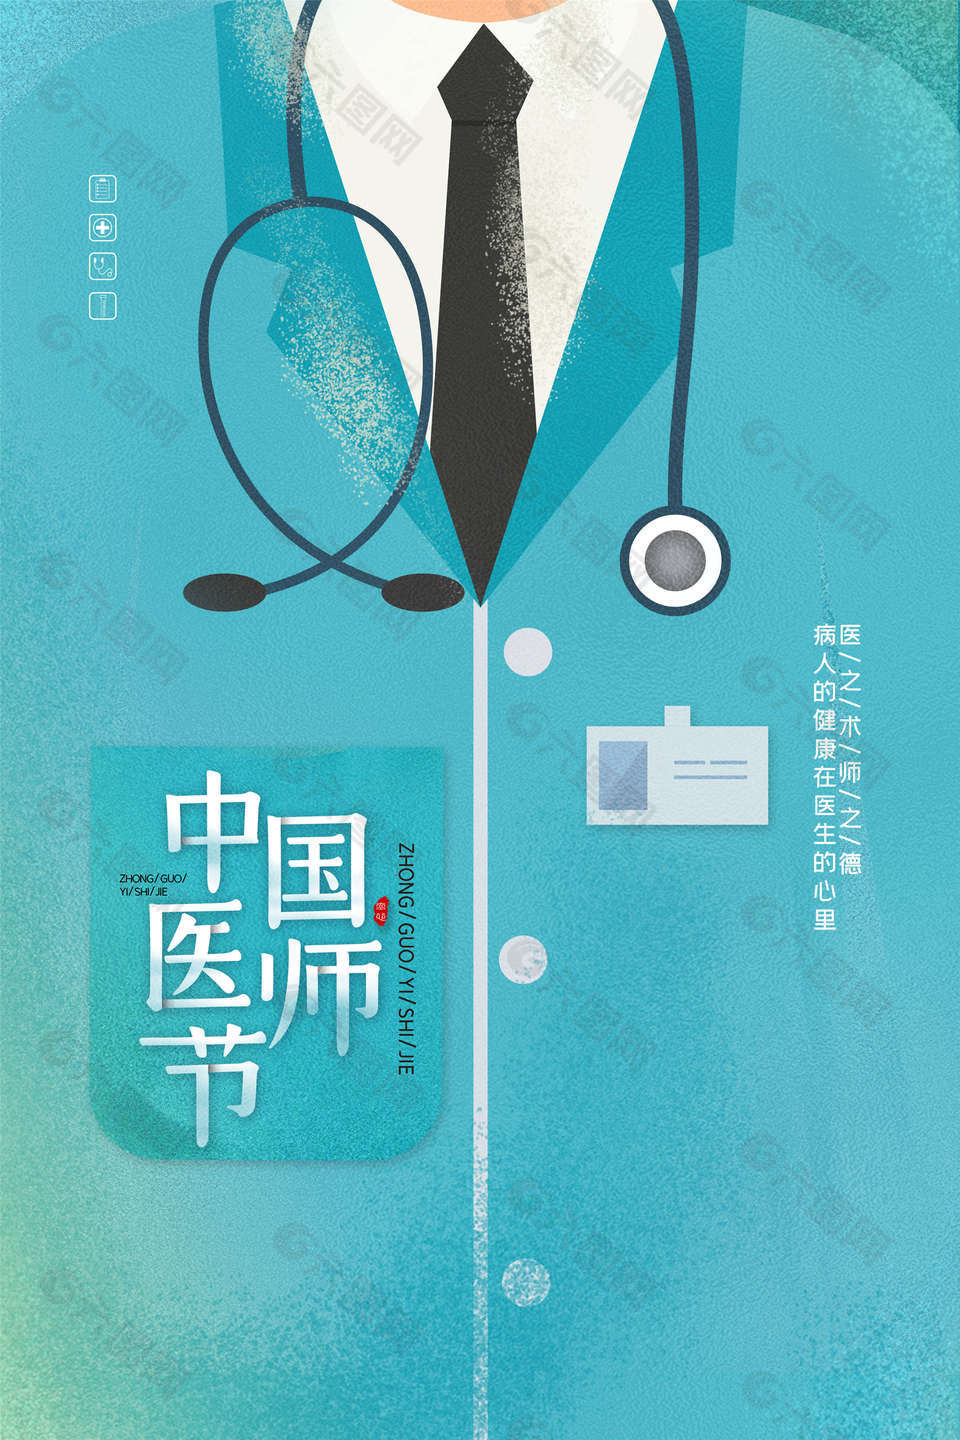 简约中国医师节素材设计